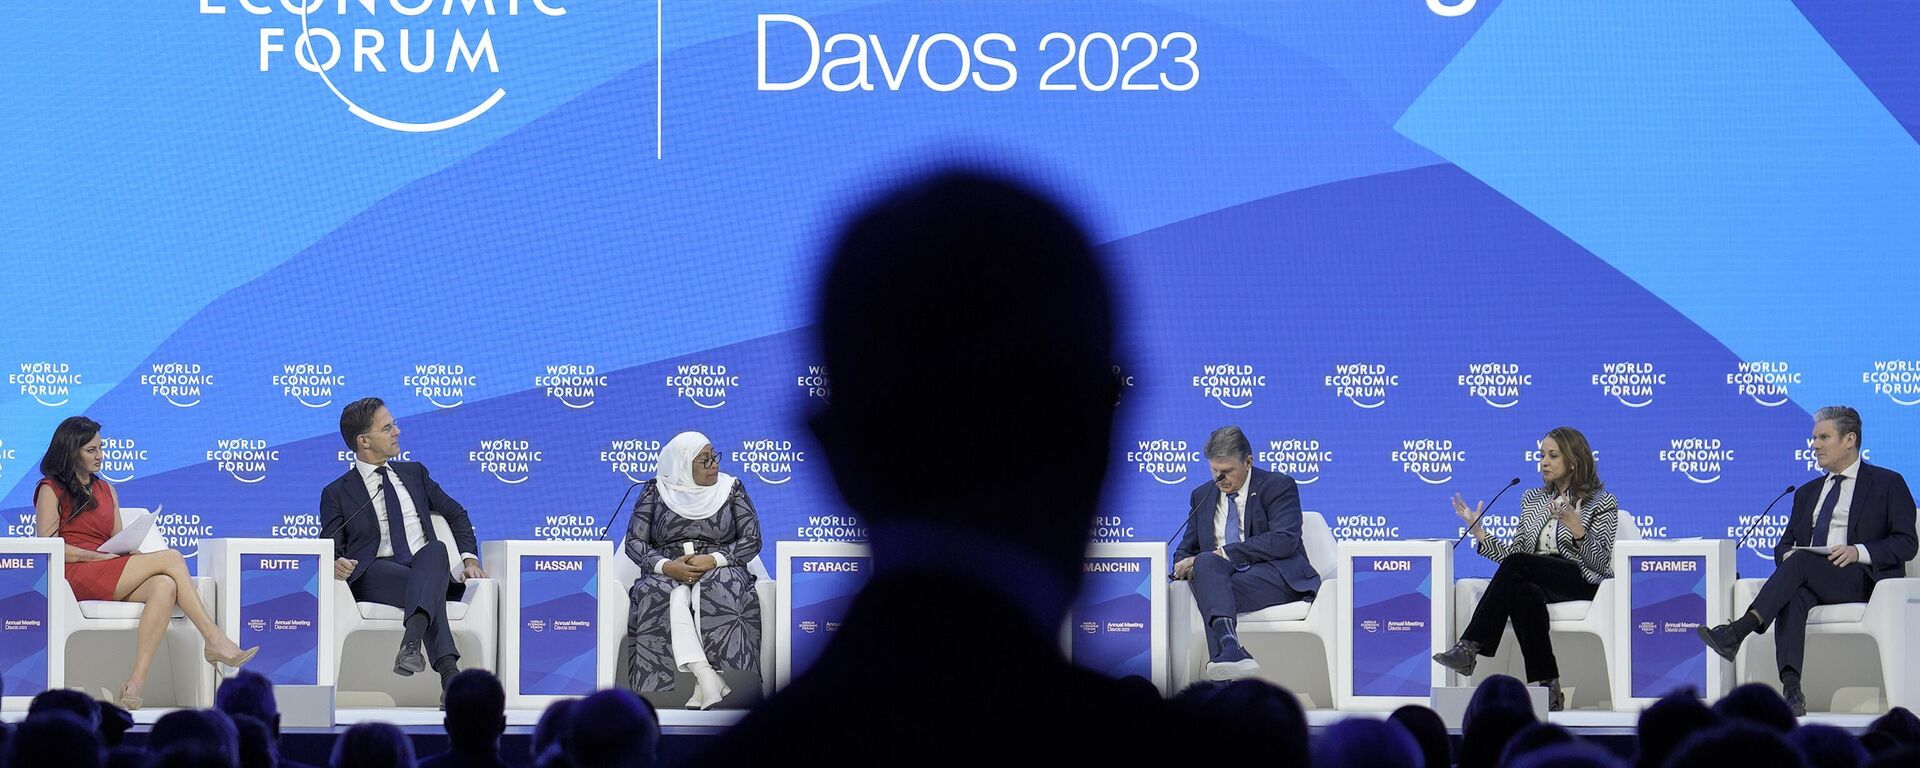 Diskusija na Svetskom ekonomskom forumu u Davosu - Sputnik Srbija, 1920, 21.01.2023